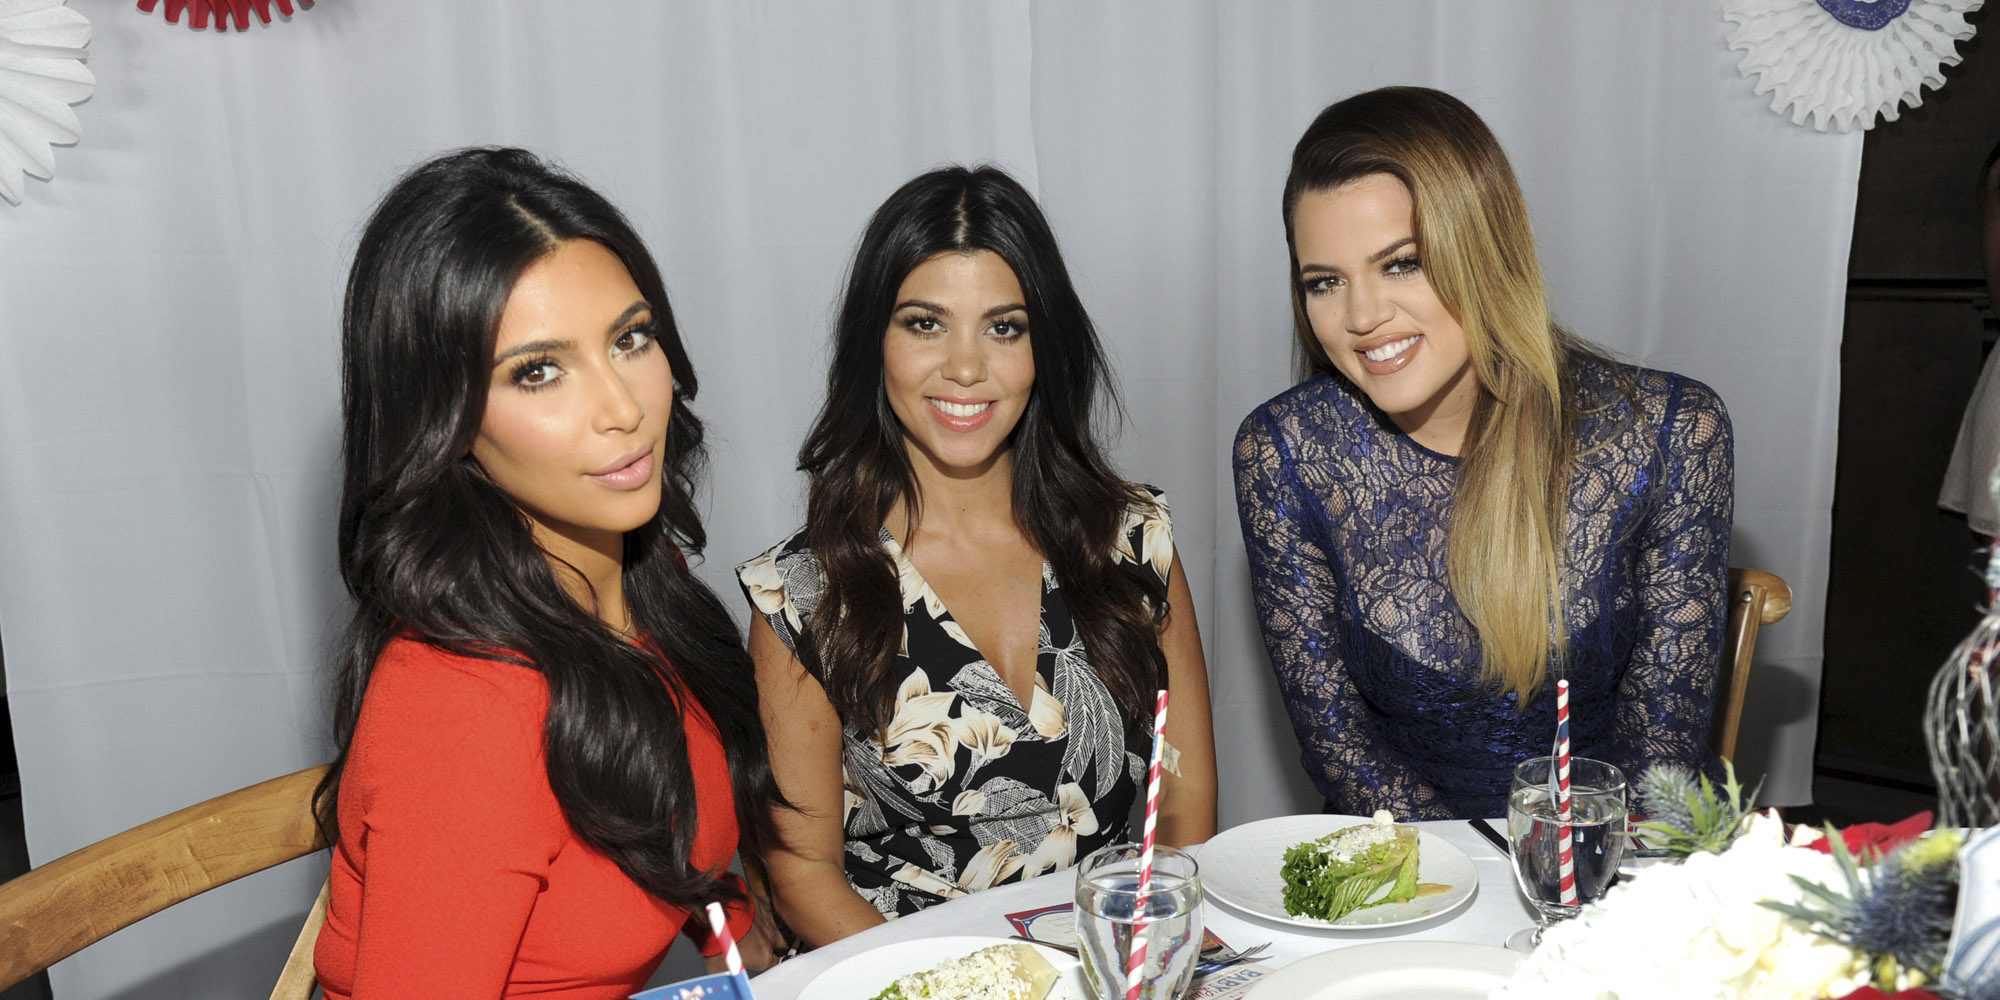 Las hermanas Kardashian se rebelan contra su cuñada Blac Chyna: No quieren que lleve su apellido tras casarse